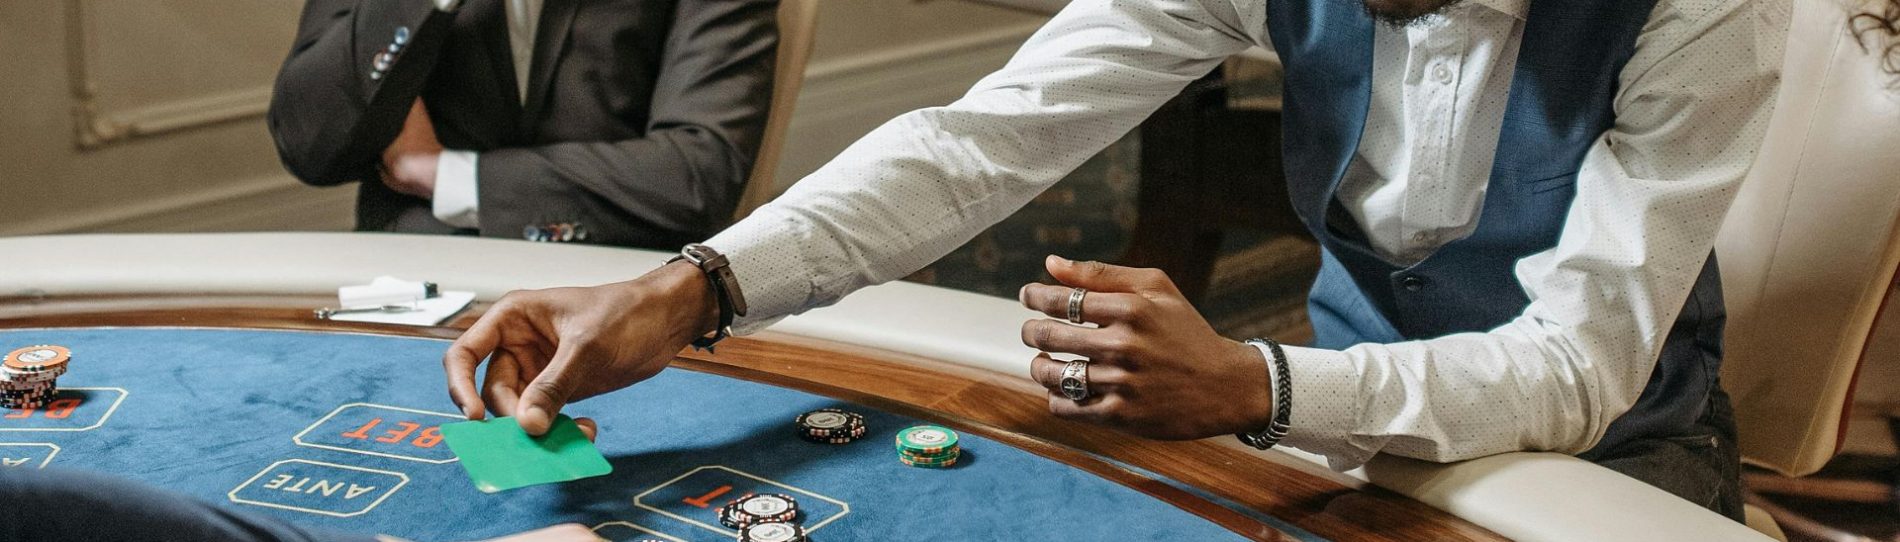 understanding-poker-hands-wicked-bucks-parties